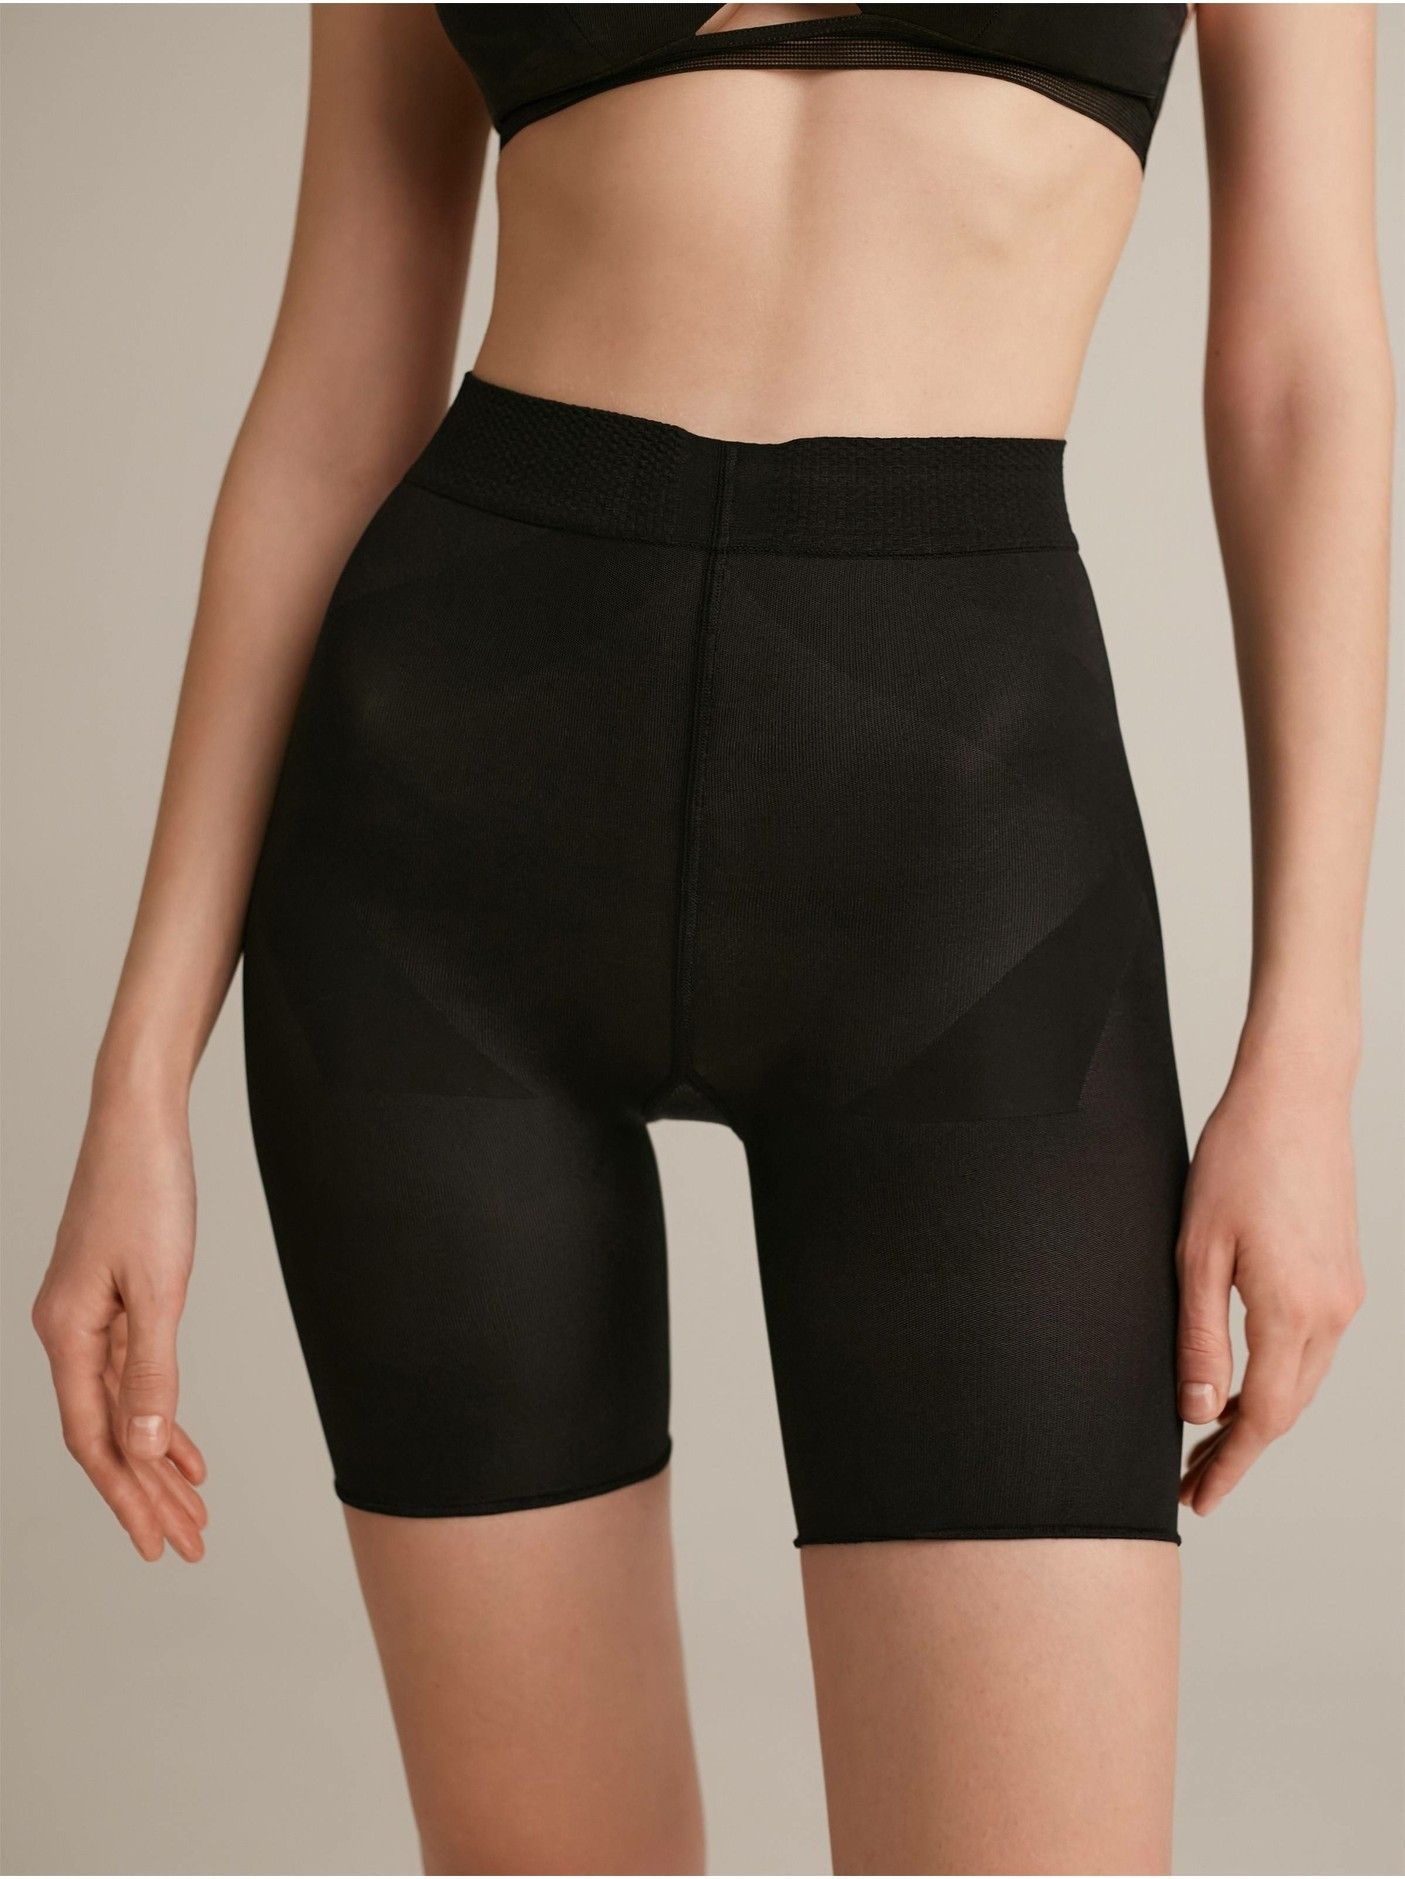 Kratke hlače za oblikoanje postave črne barve X-PRESS Conte